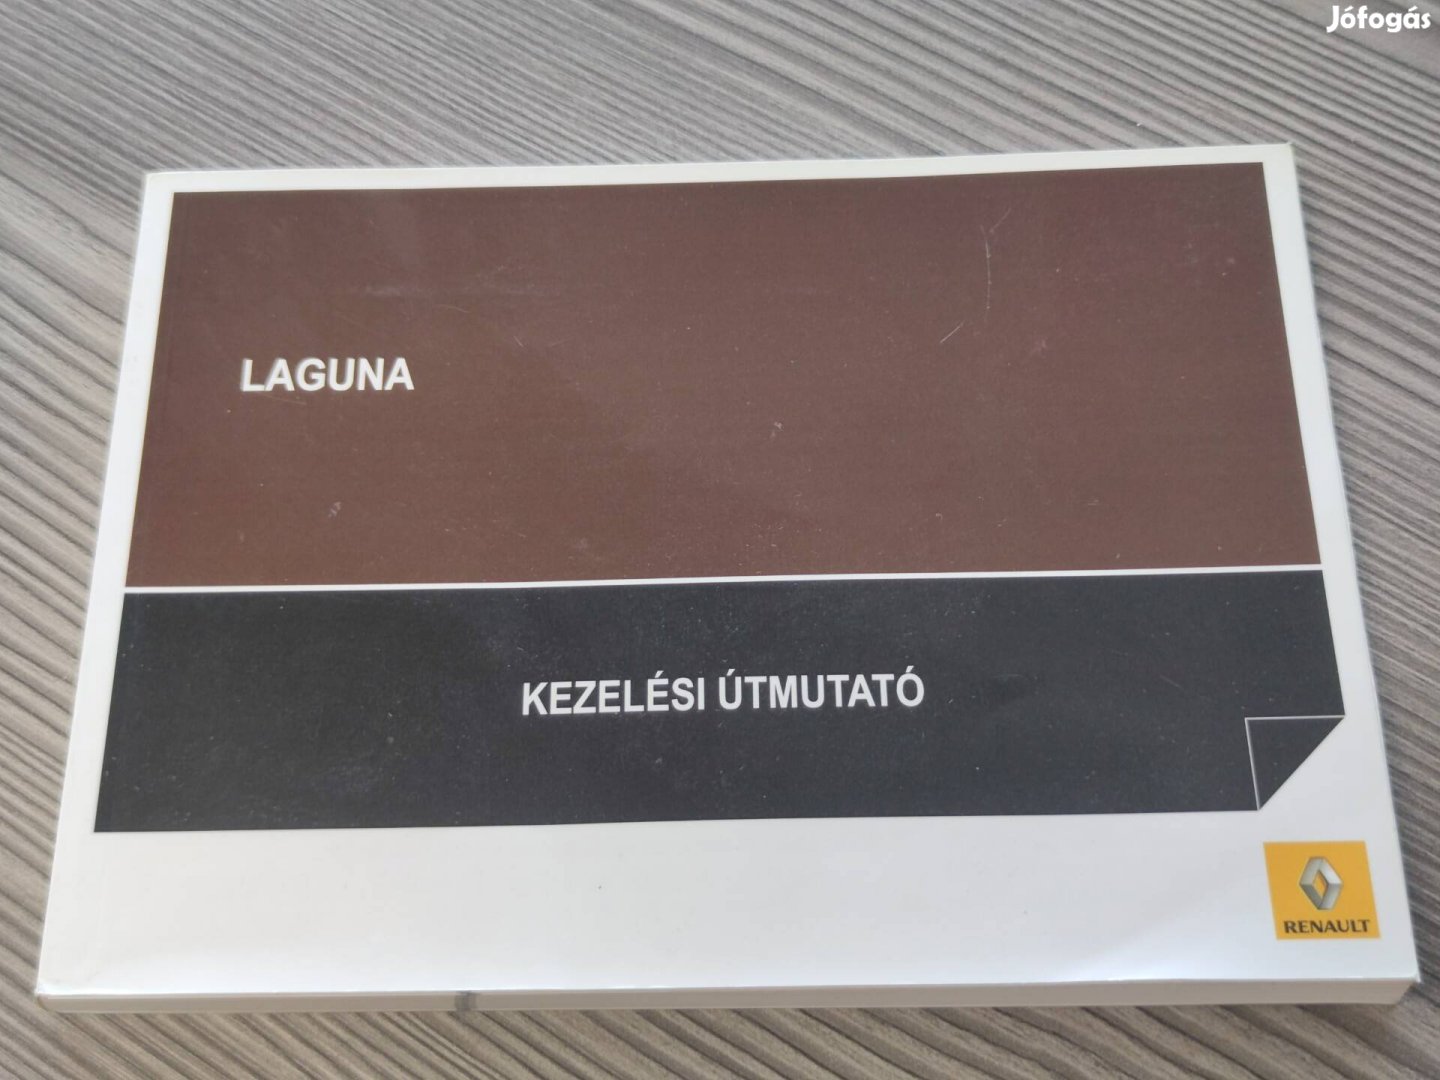 Renault Laguna kezelési útmutató 